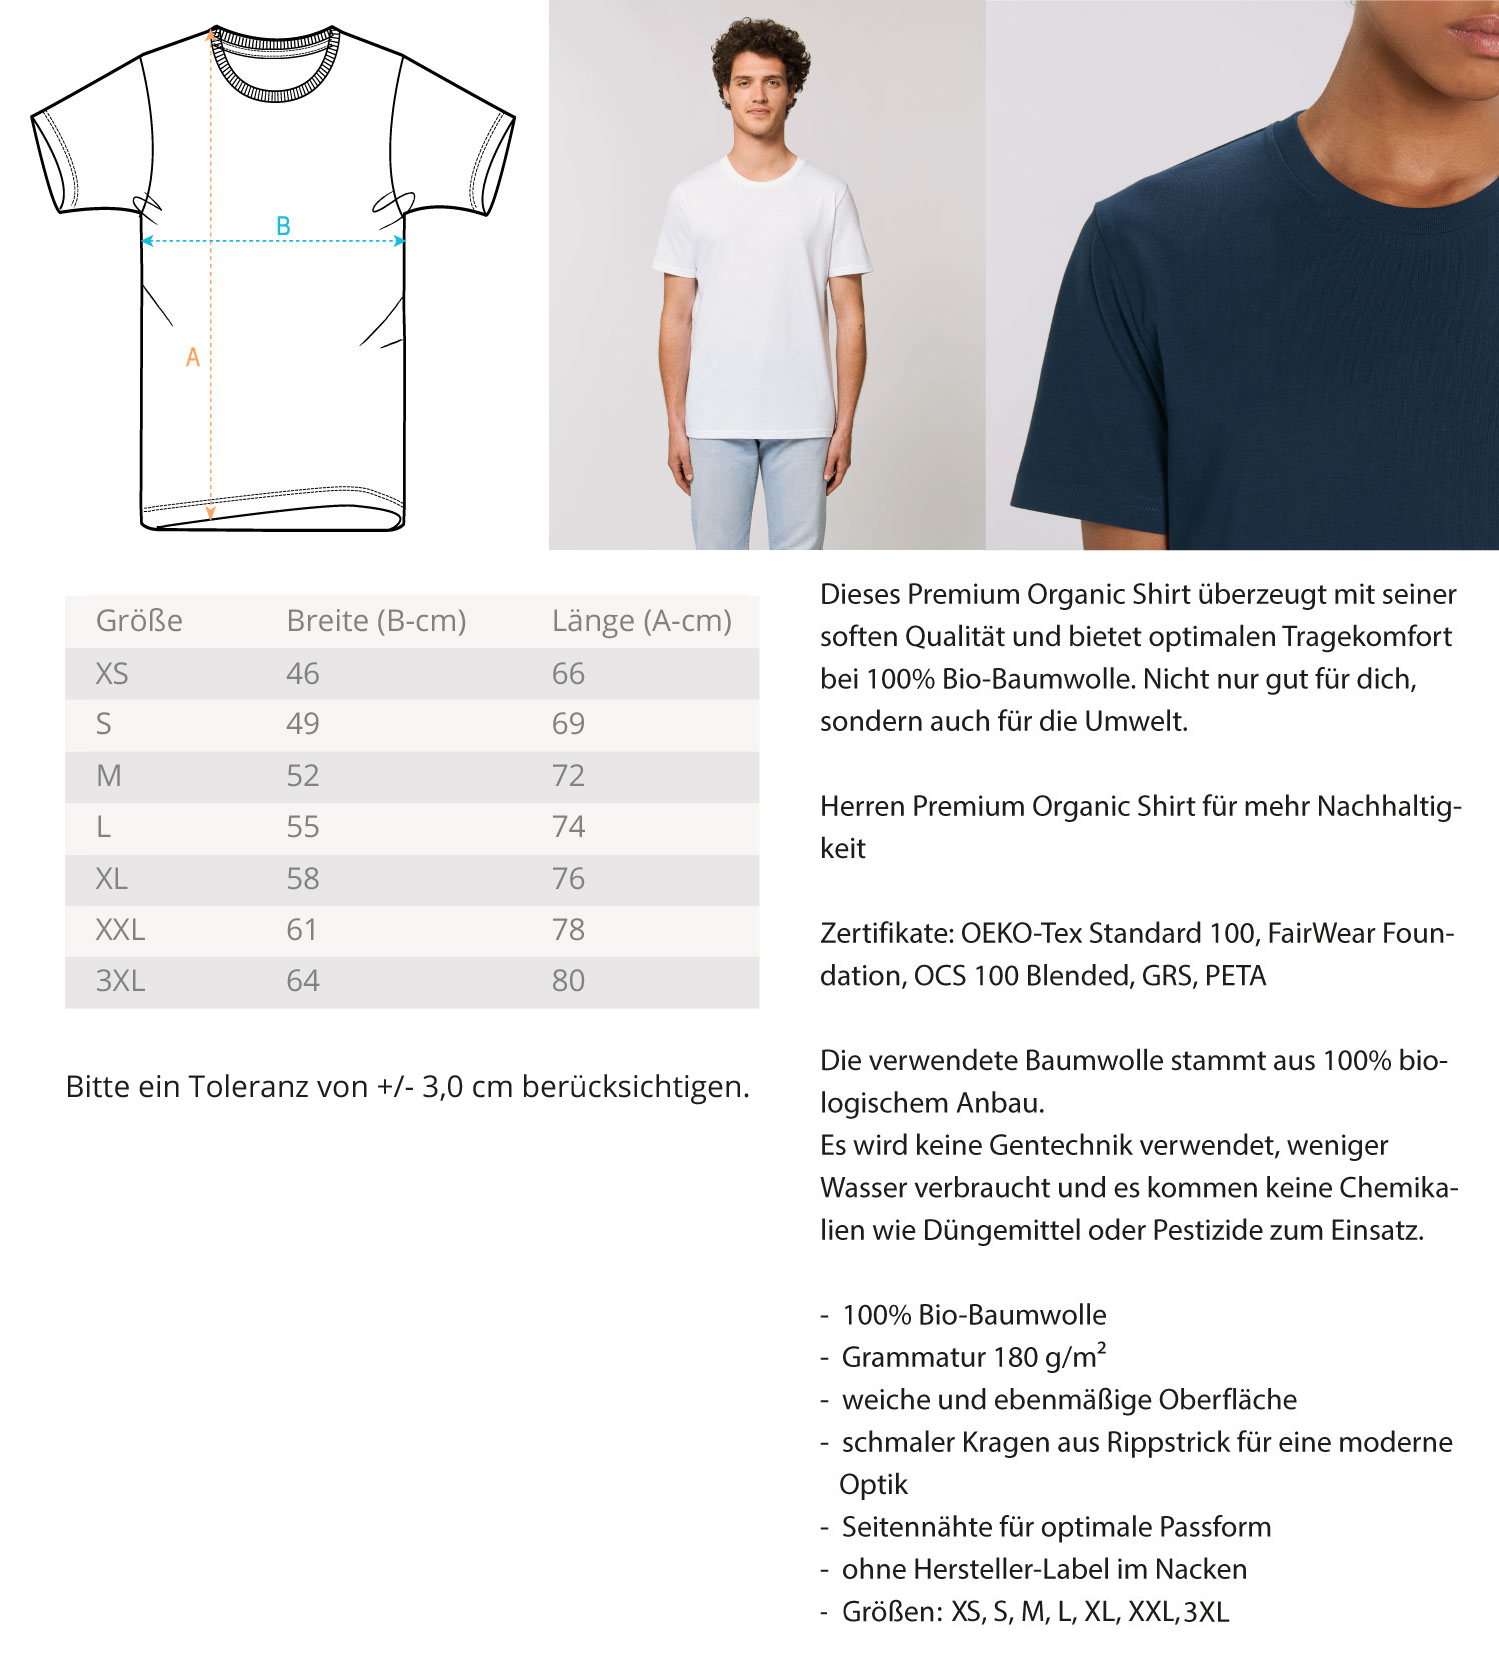 Wolfsmilch - (Herren - Unisex Premium Organic Shirt ST/ST)